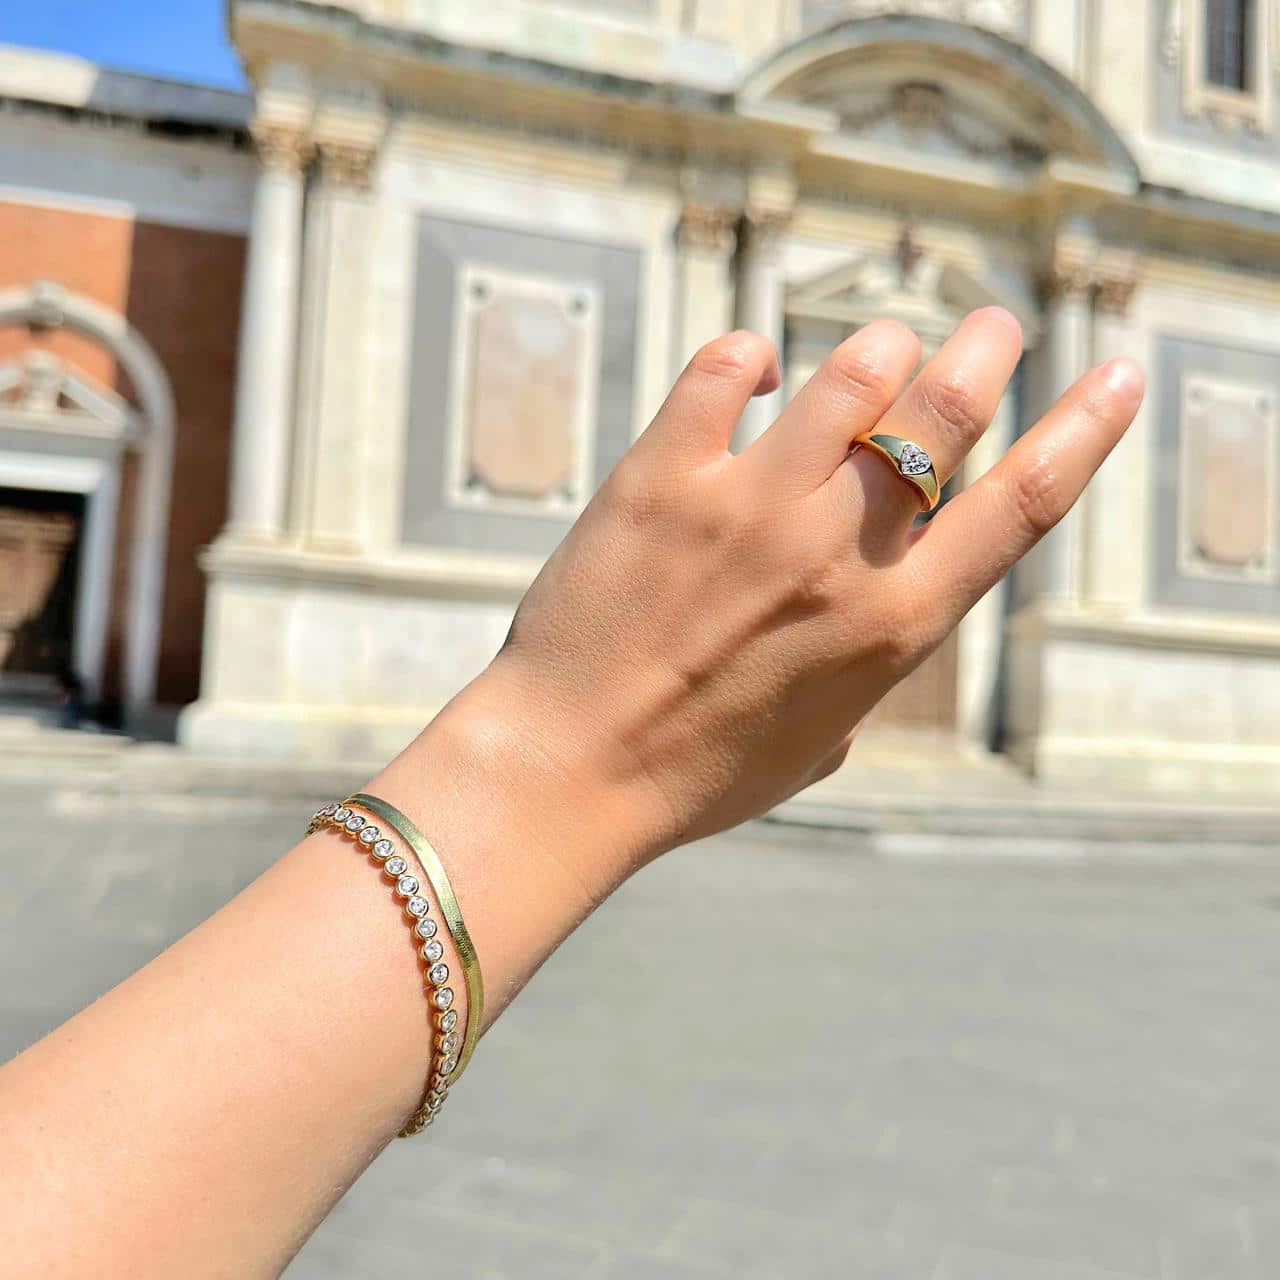 Herringbone-Armband aus vergoldetem Silber getragen mit weiterem Schmuck von CANDY auf einem Piazza in Bellinzona